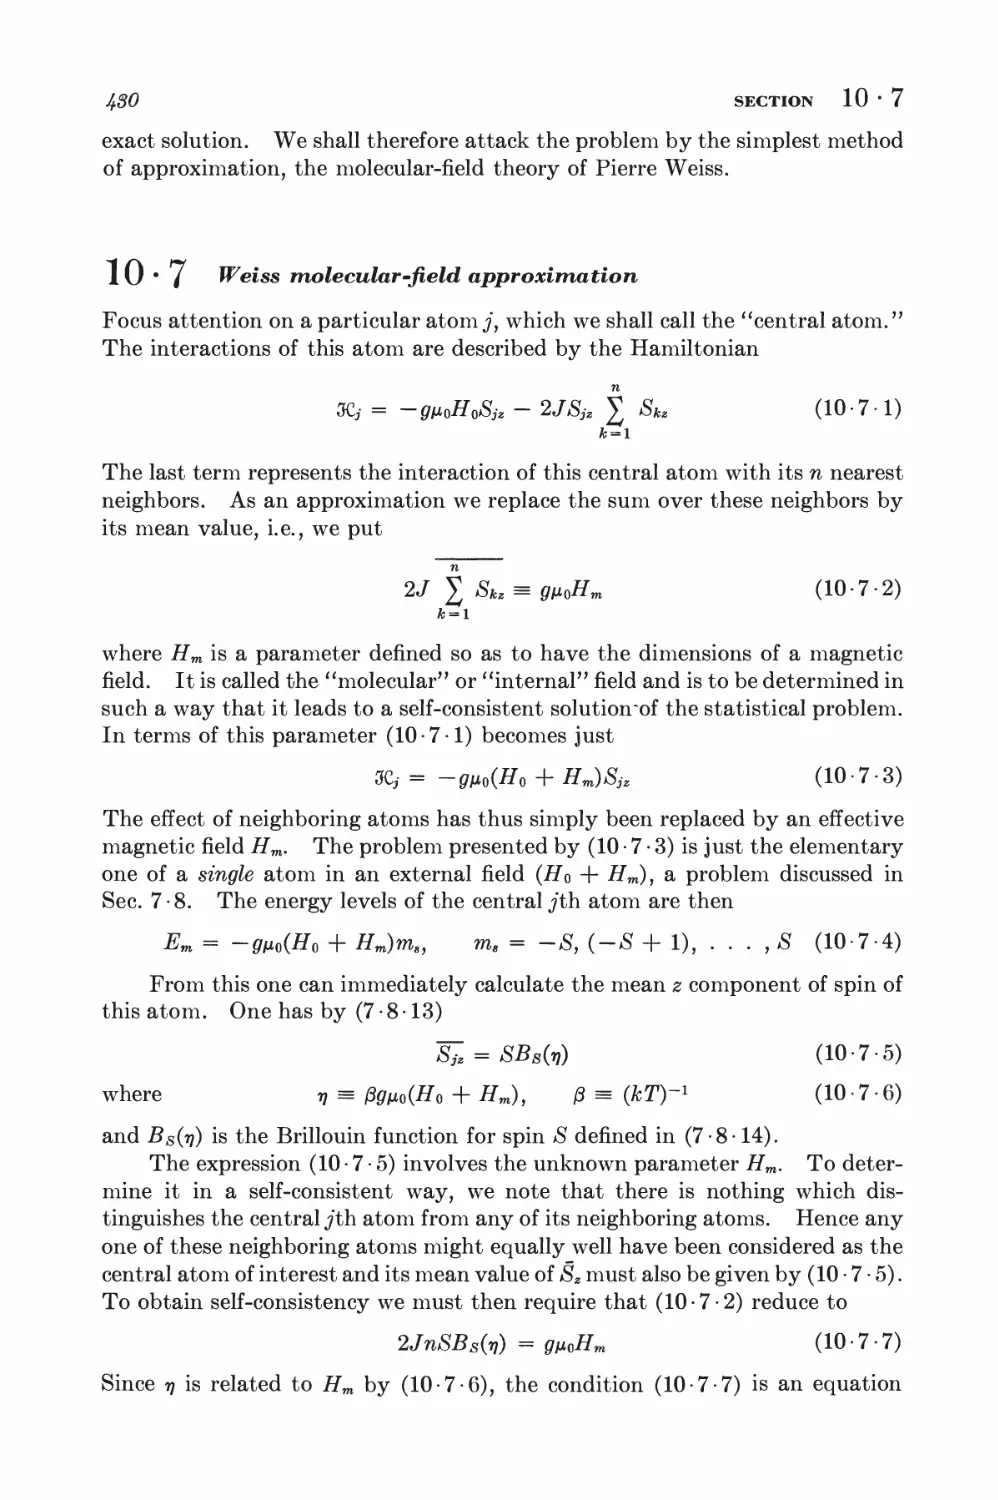 10.7 Weiss molecular-field approximation